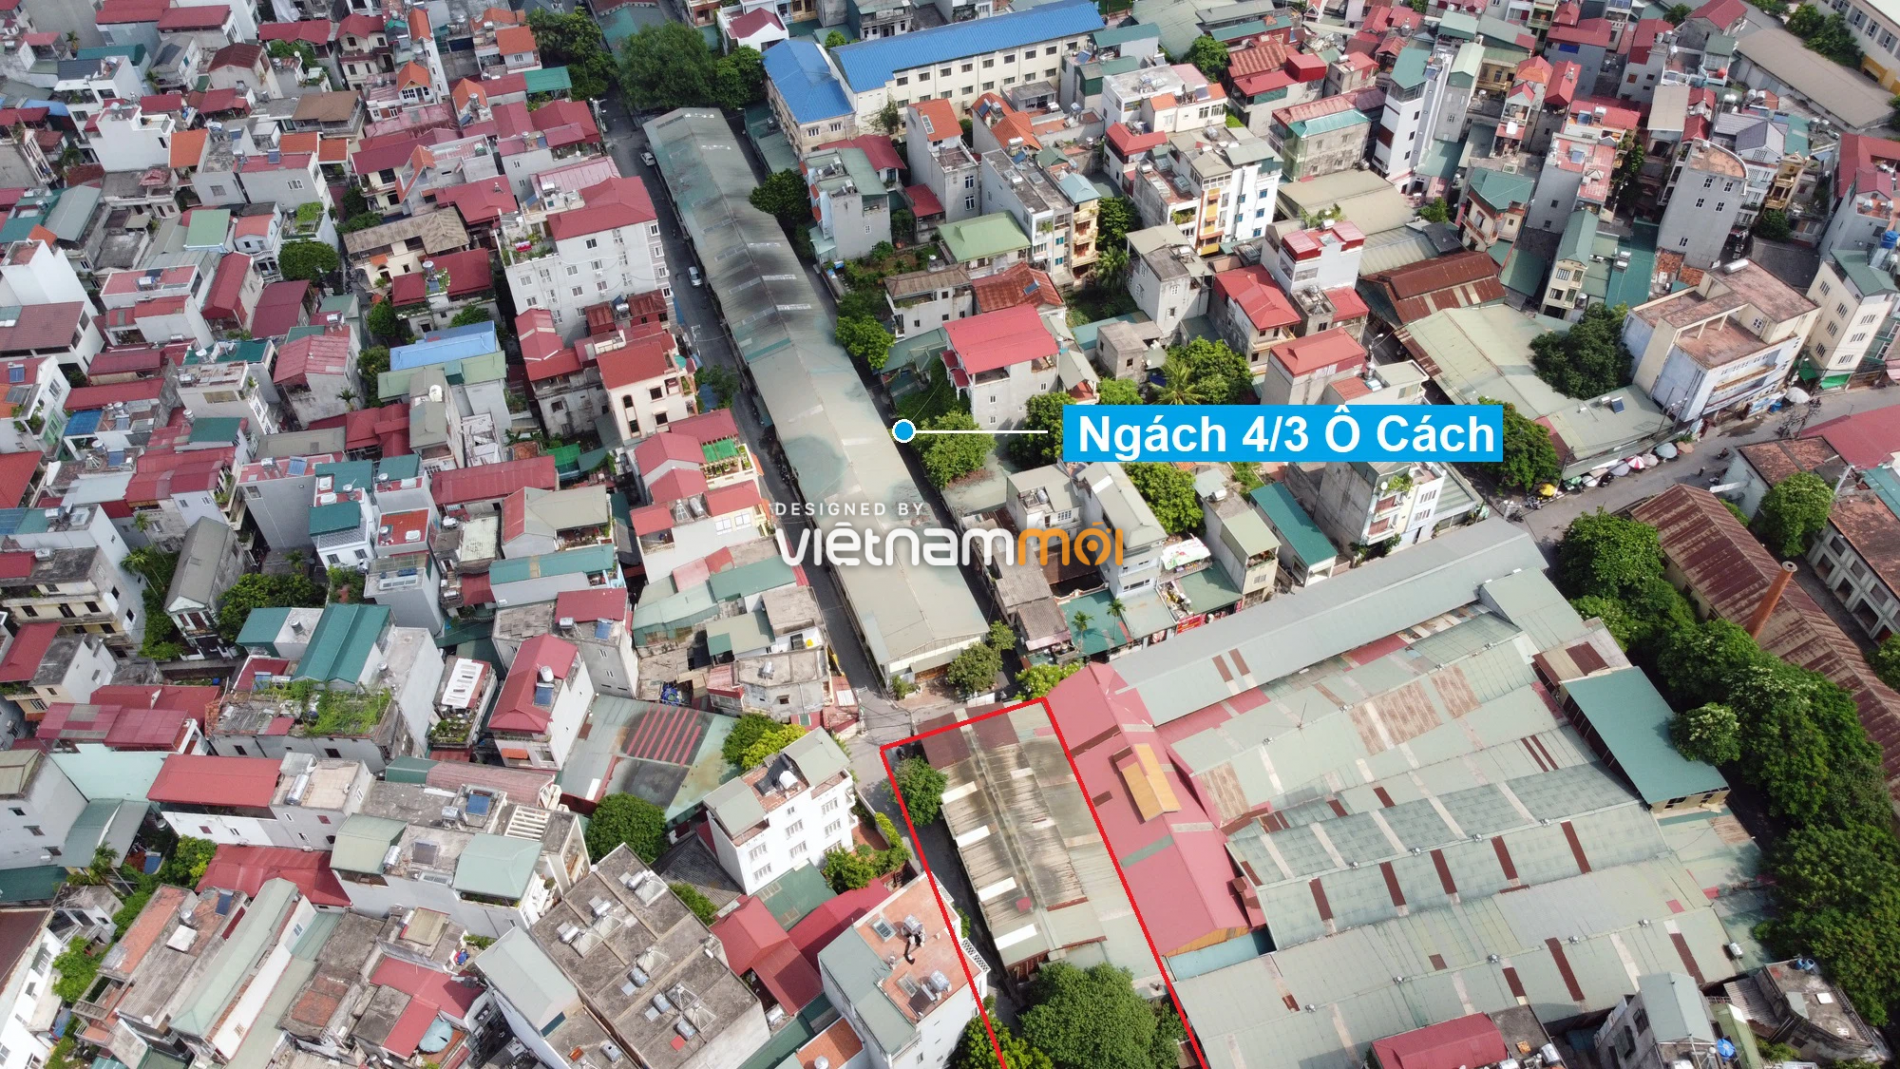 Những khu đất sắp thu hồi để mở đường ở phường Việt Hưng, Long Biên, Hà Nội (phần 1) - Ảnh 15.